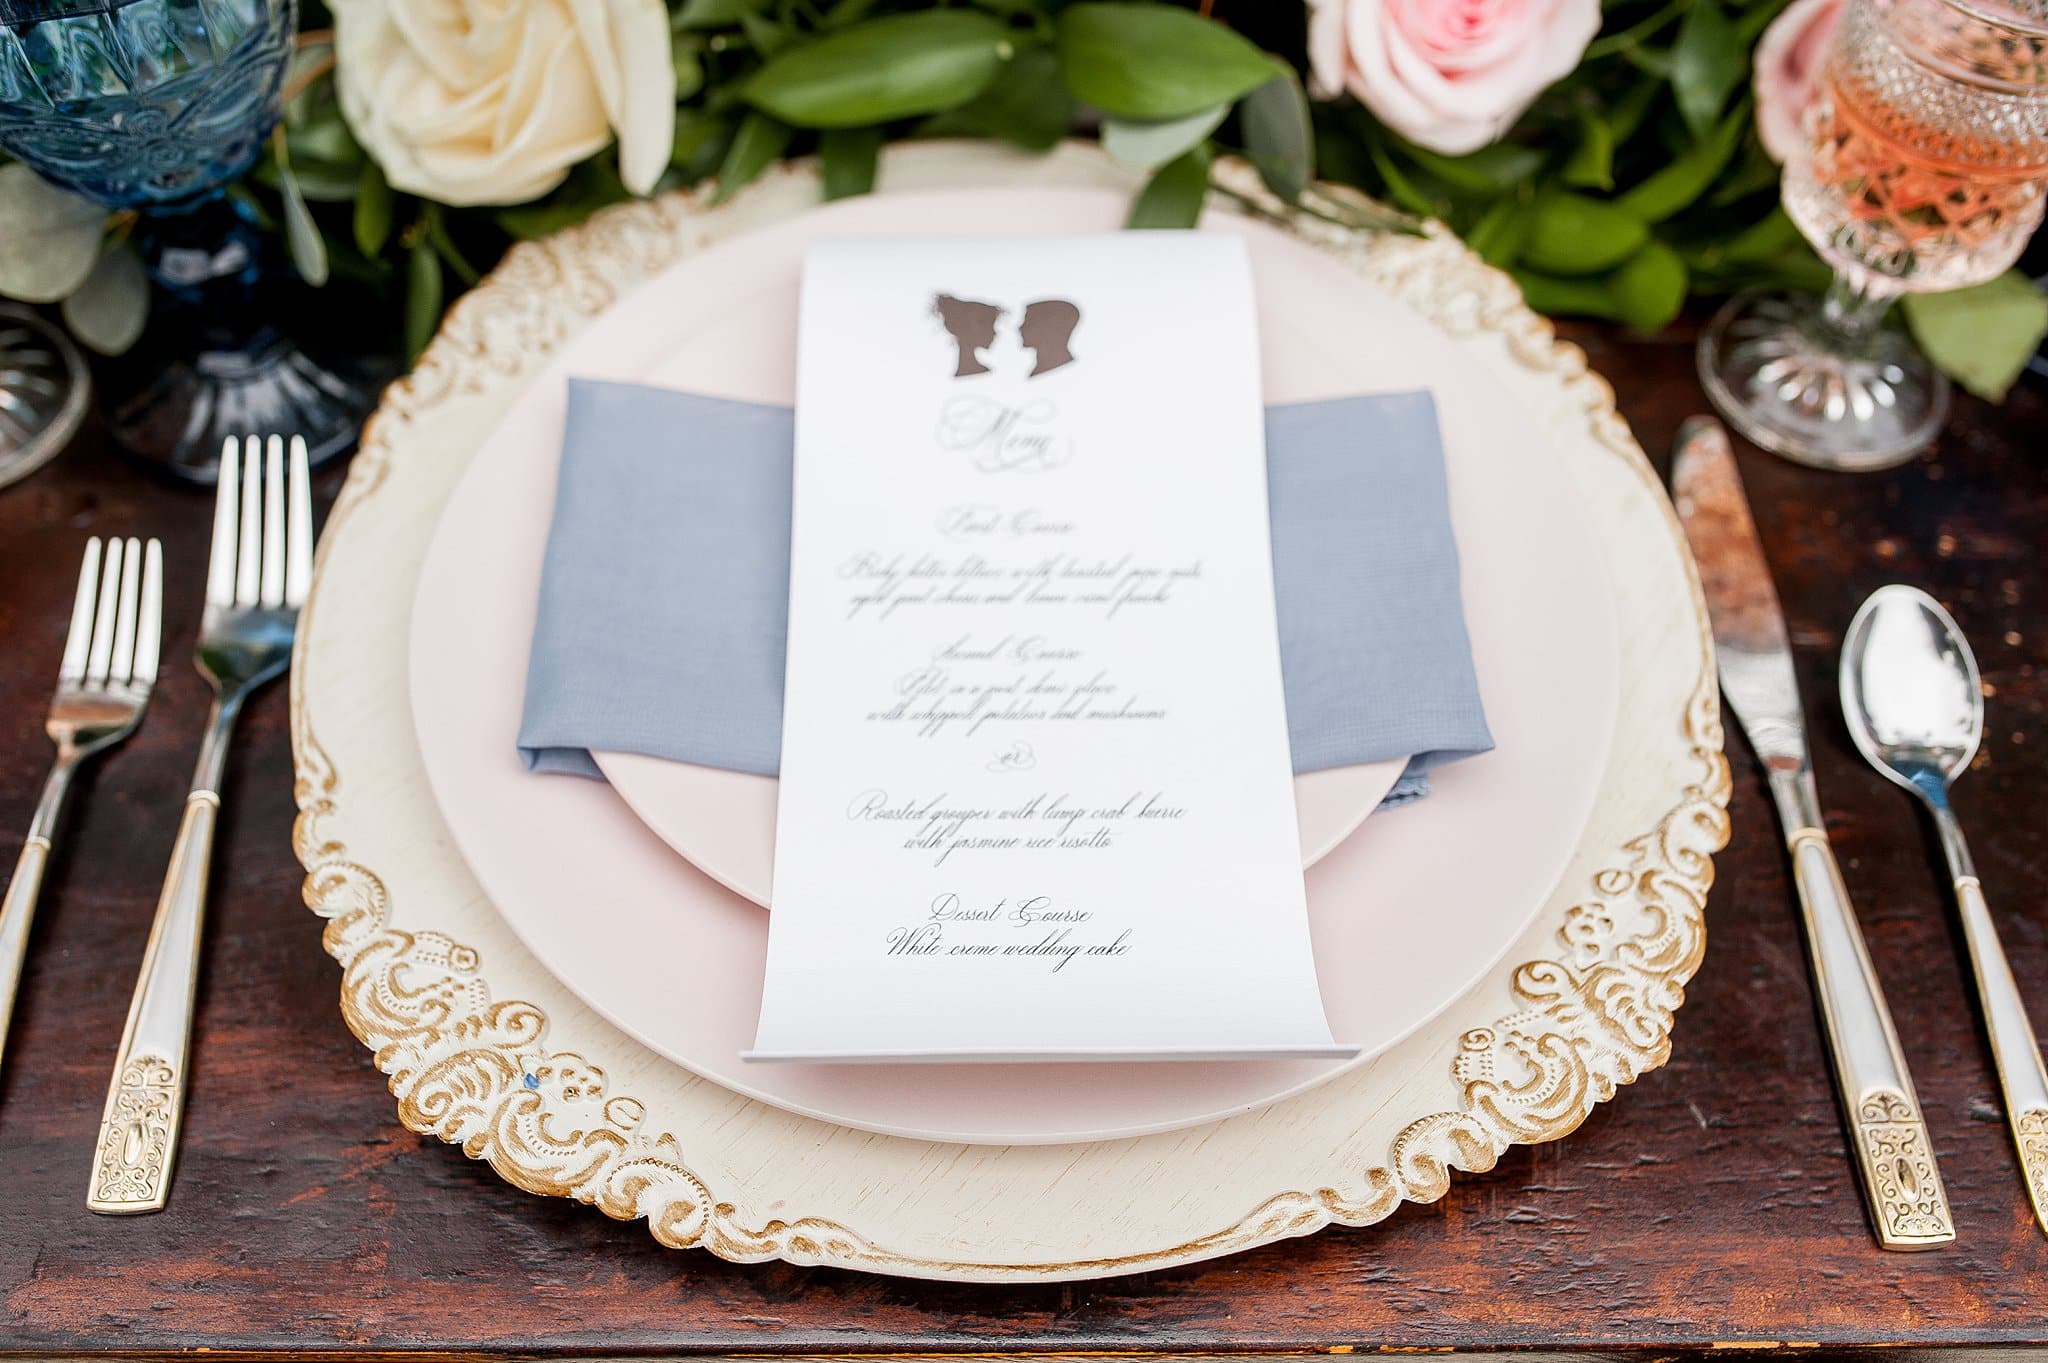 Bridgerton Wedding Reception Details Tablescape